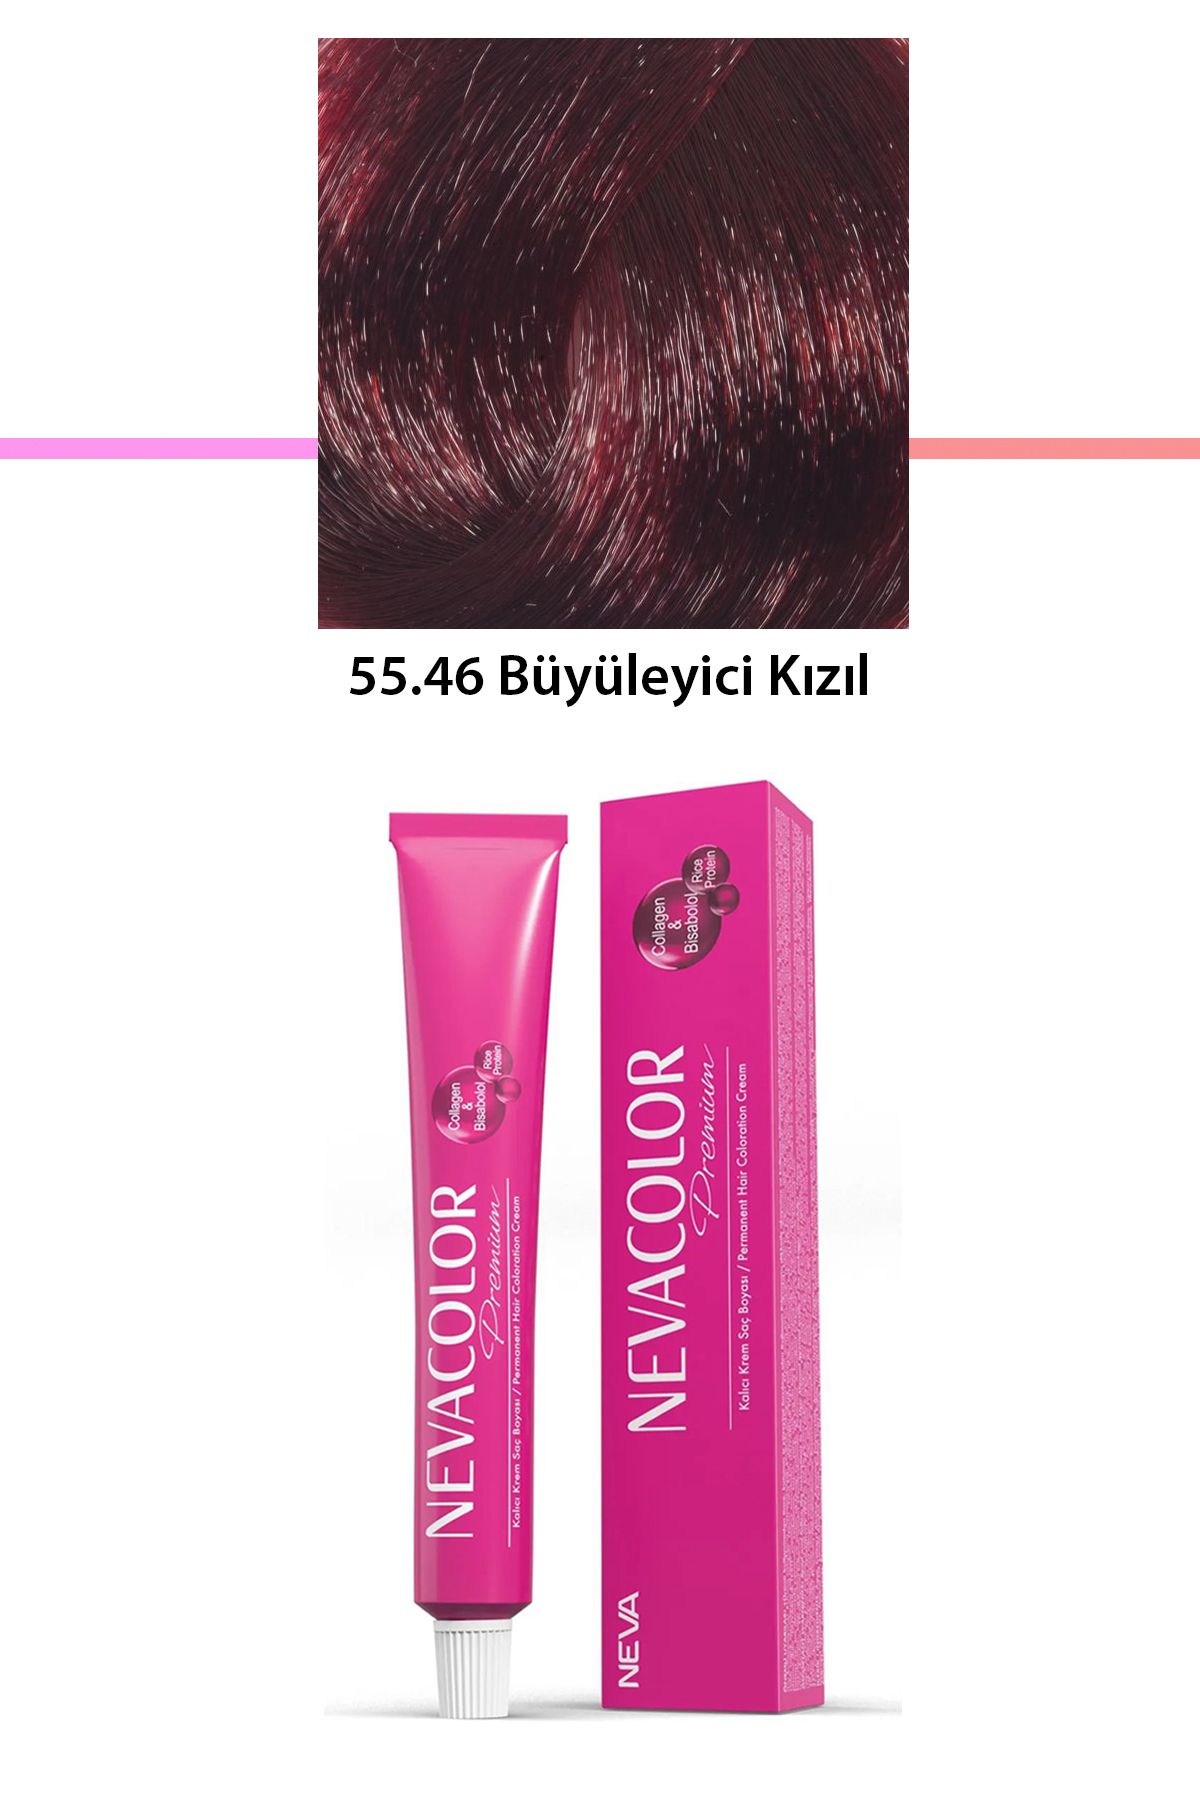 Neva Color Premium 55.46 Büyüleyici Kızıl - Kalıcı Krem Saç Boyası 50 g Tüp